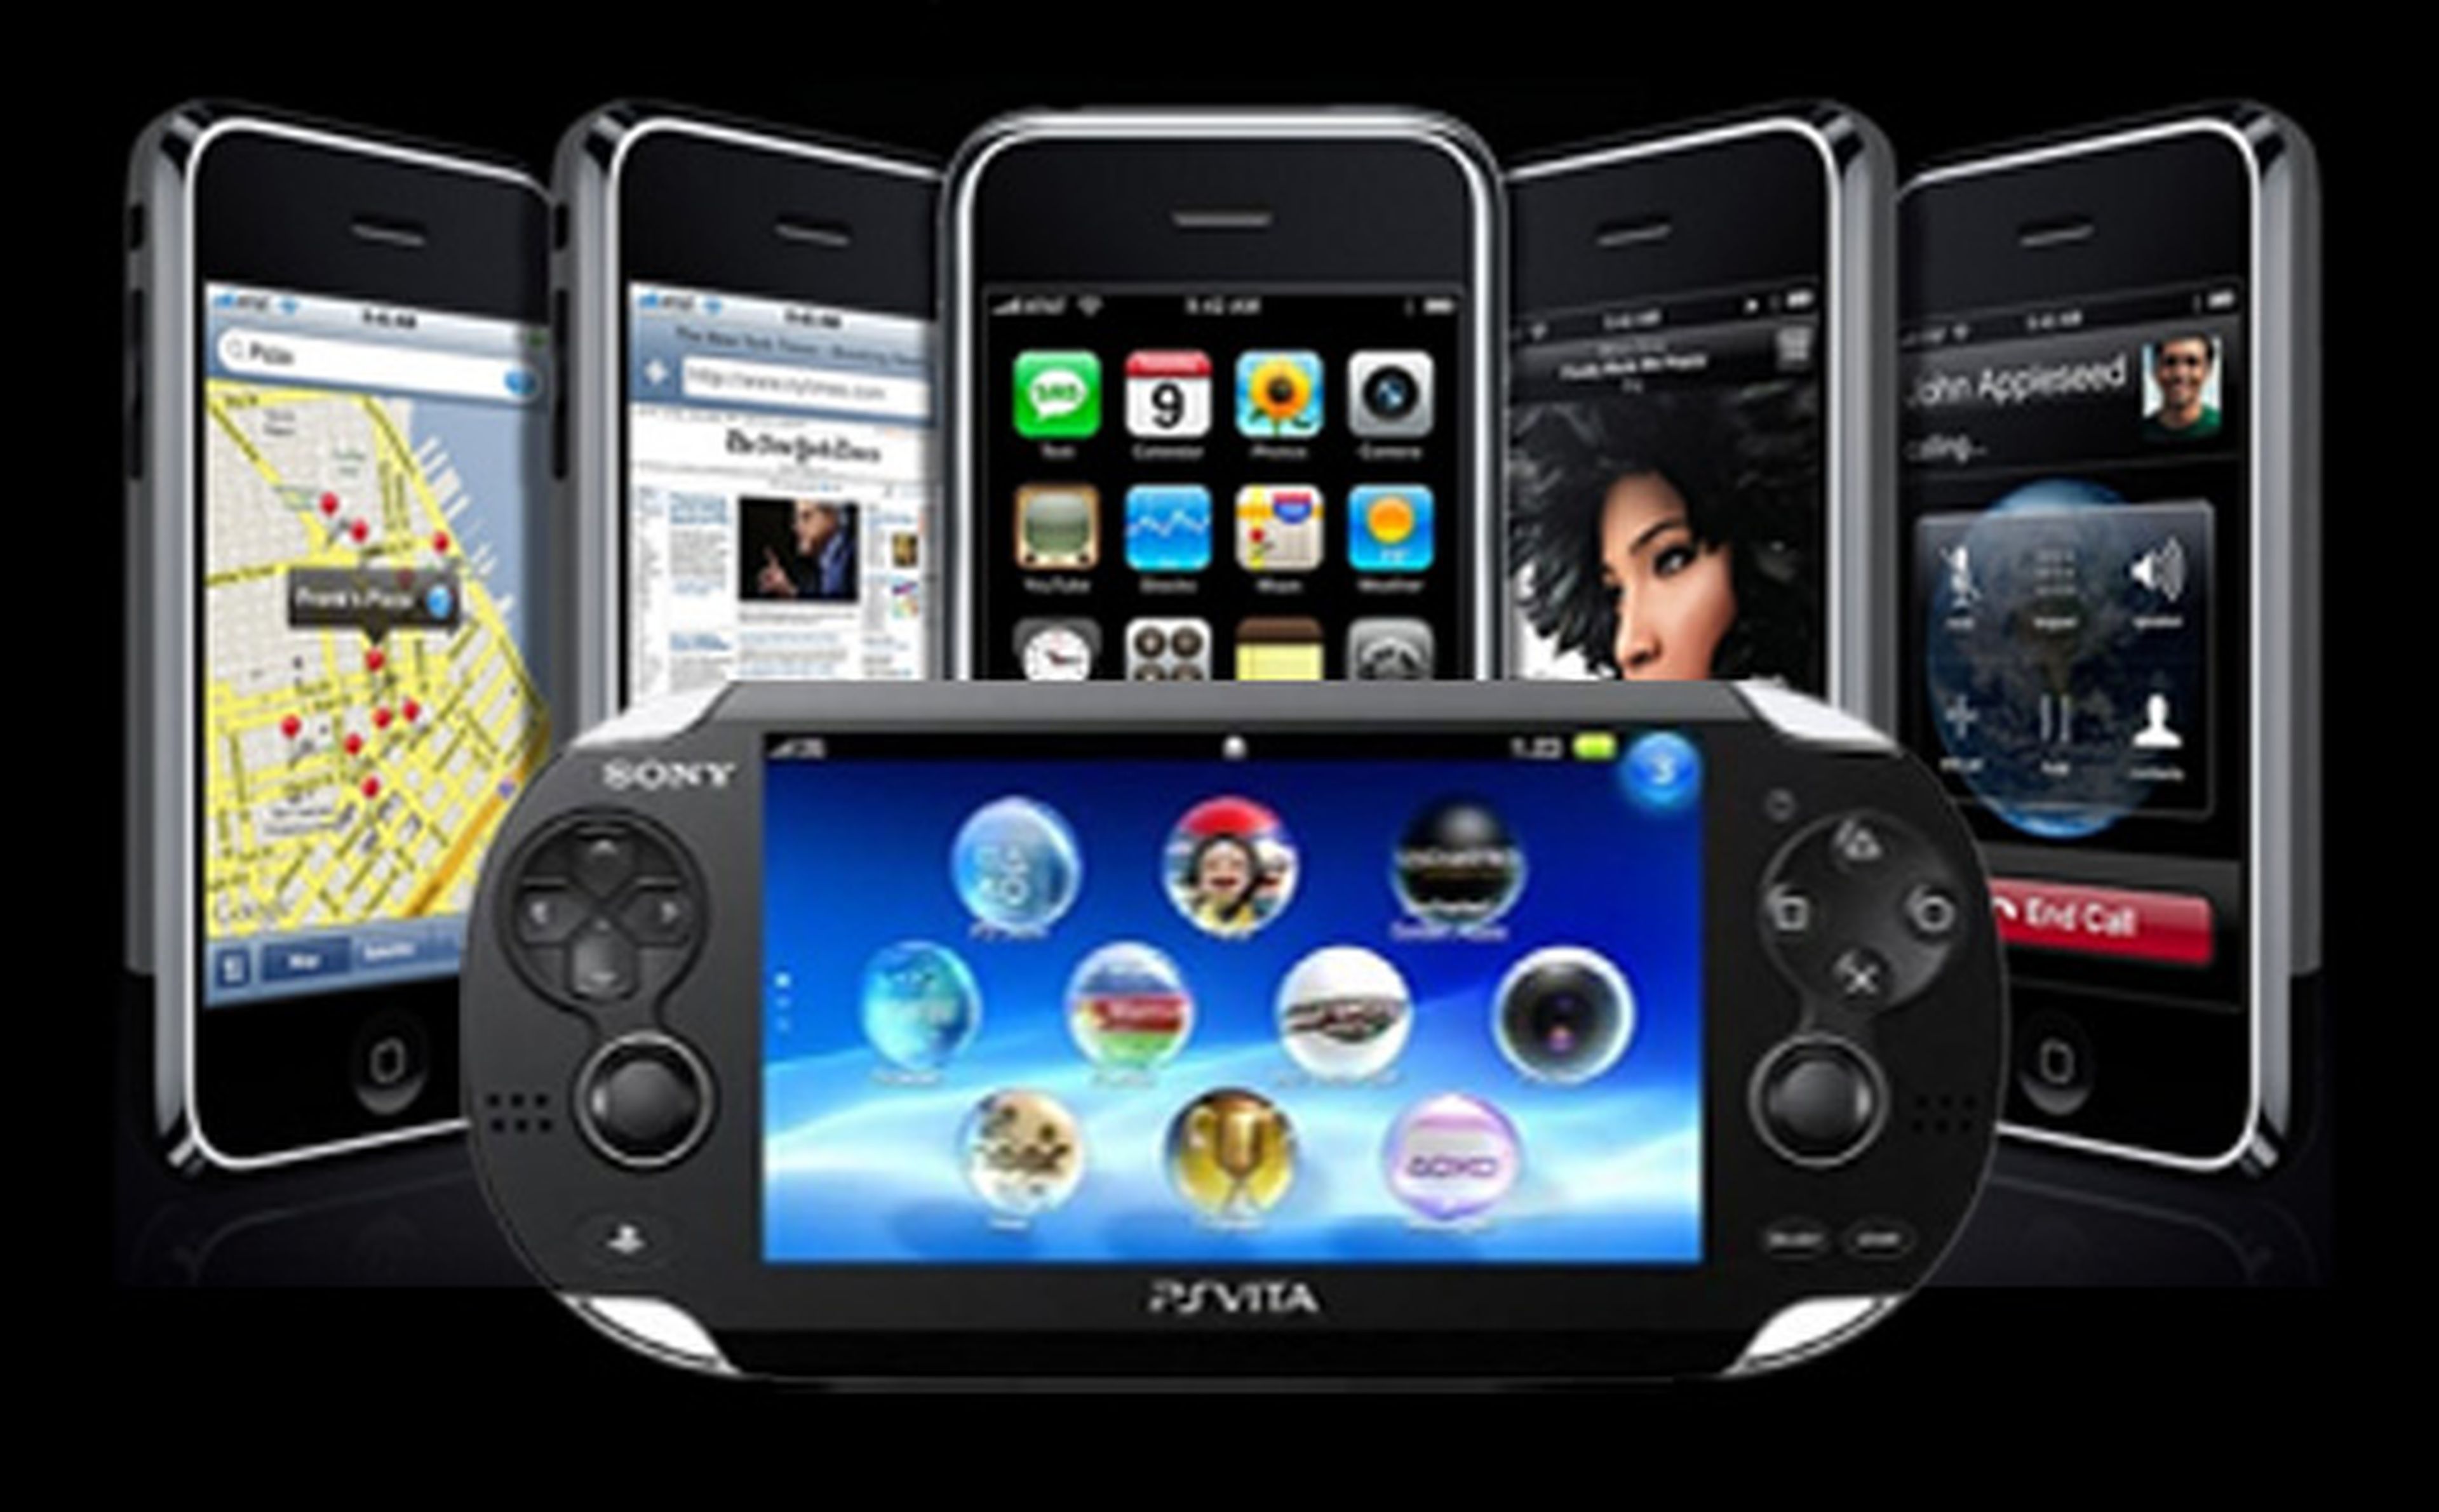 Sony lanza la PS Vita para competir con el iPad y la Nintendo 3DS